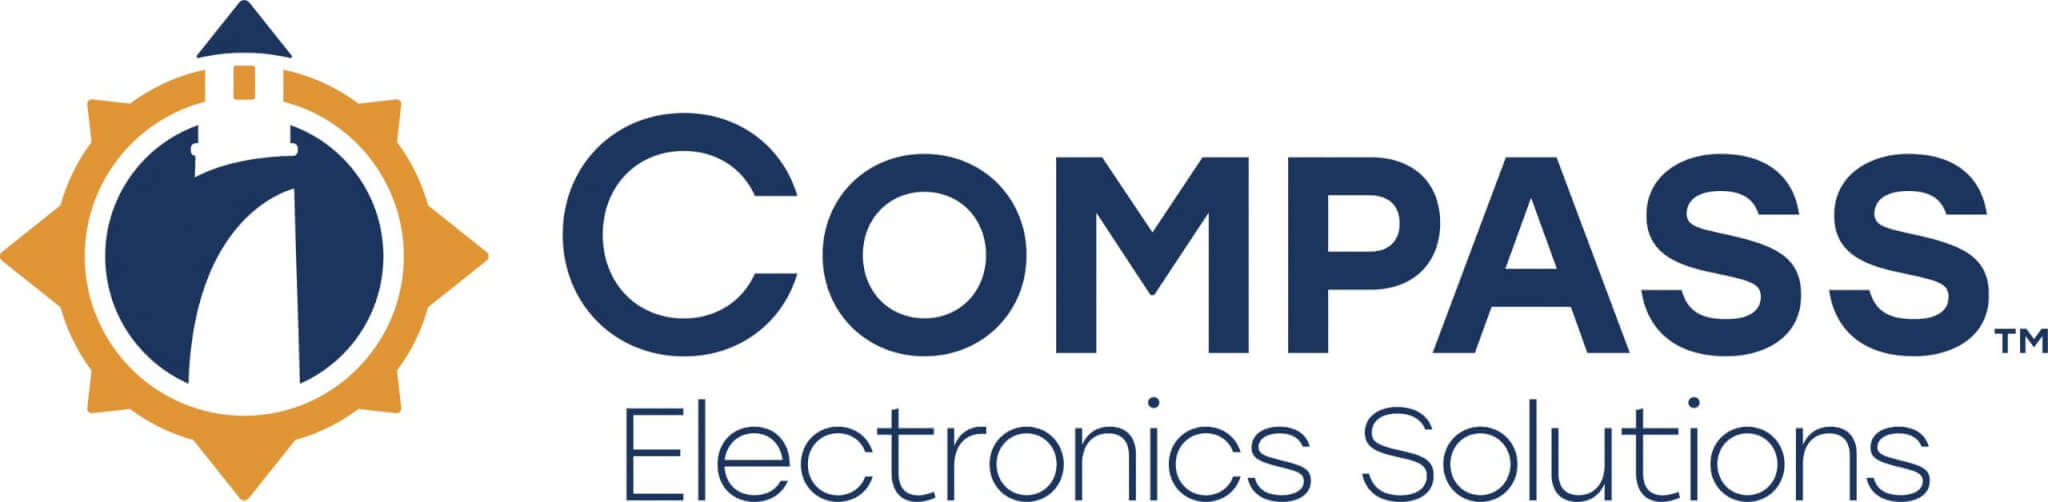 Compass electronics logo